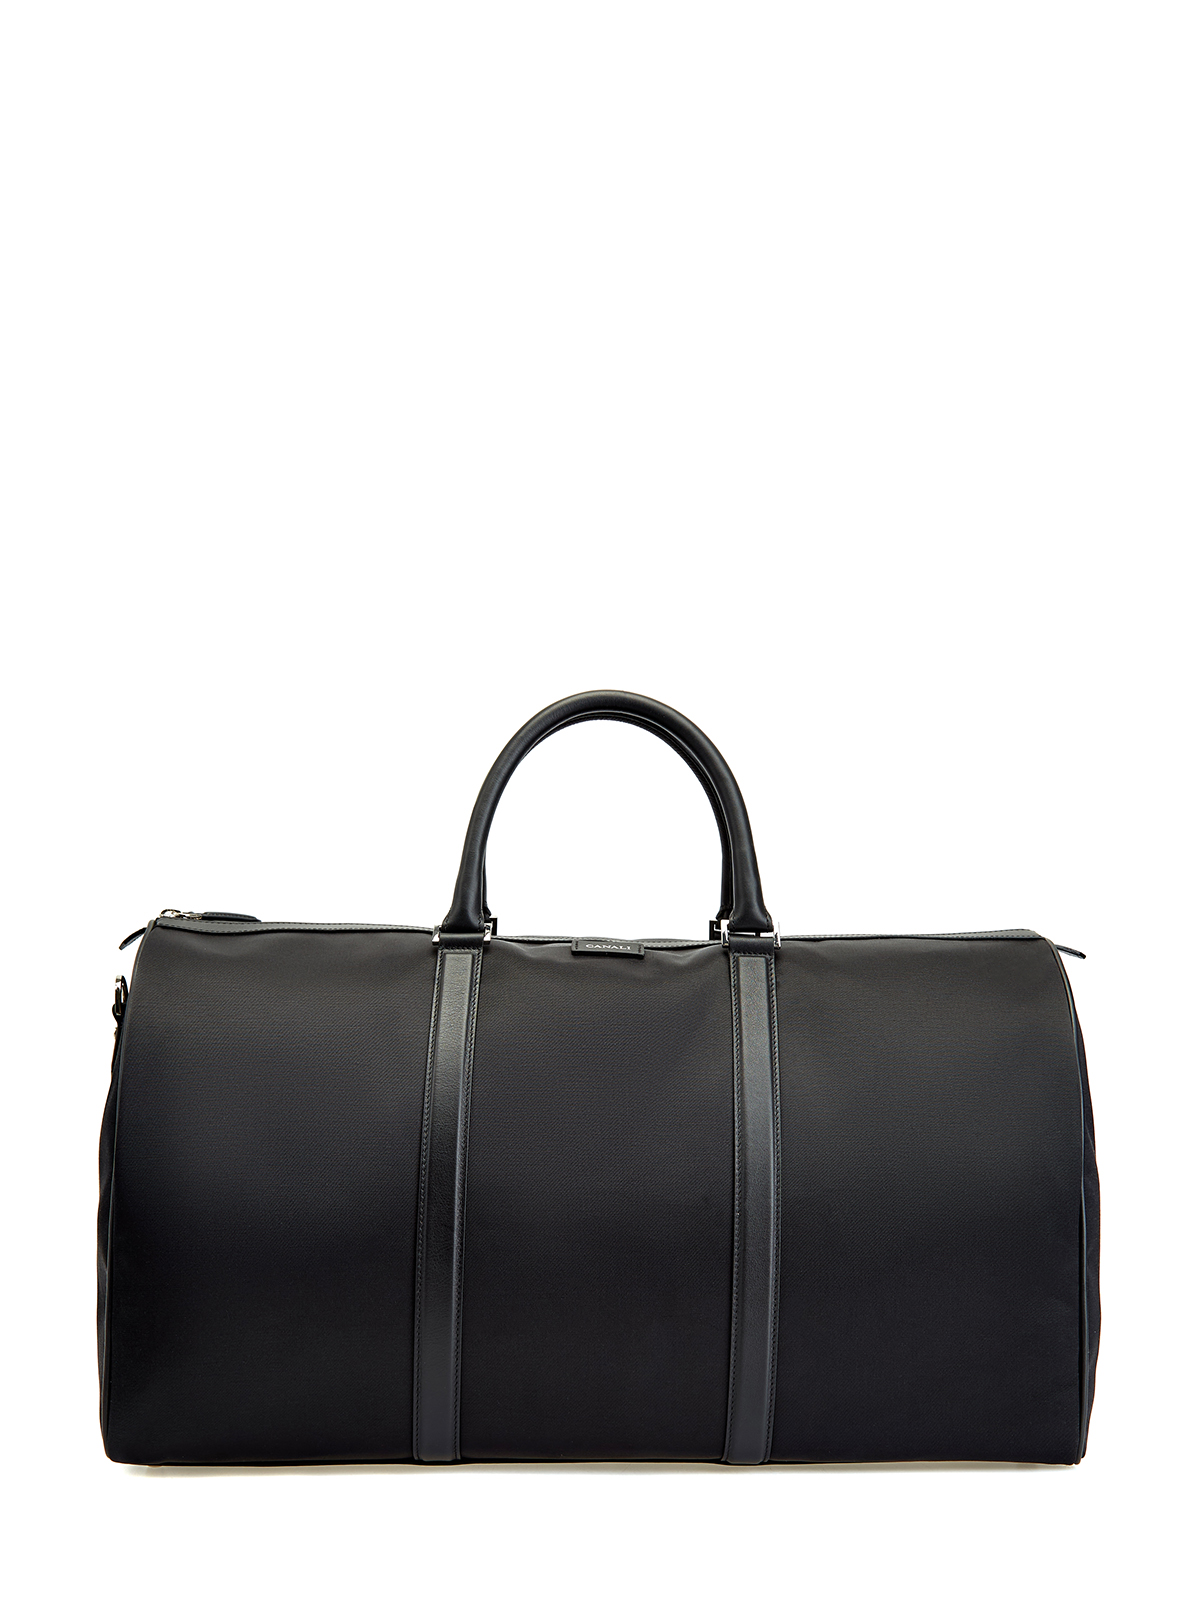 Дорожная сумка с отделкой из кожи и съемным плечевым ремнем CANALI, цвет черный, размер 41;41.5;42;43;43.5